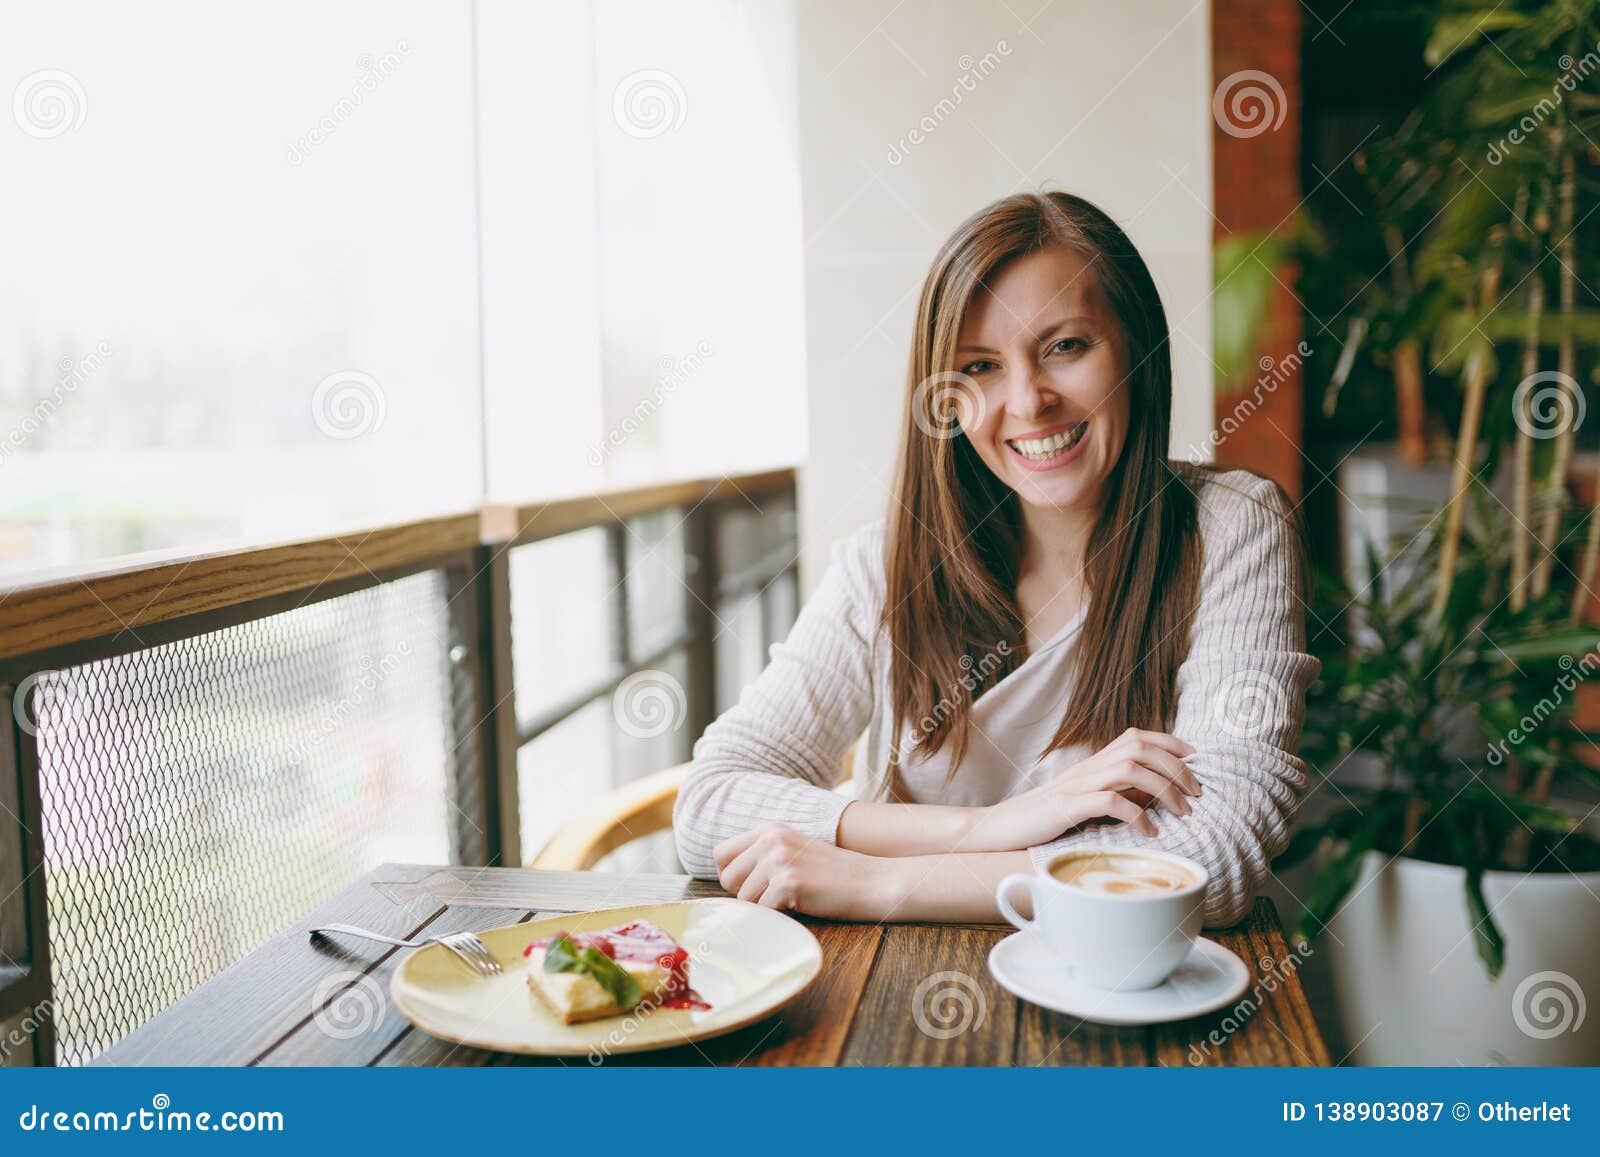 Женя хочет позавтракать в кафе меню показано